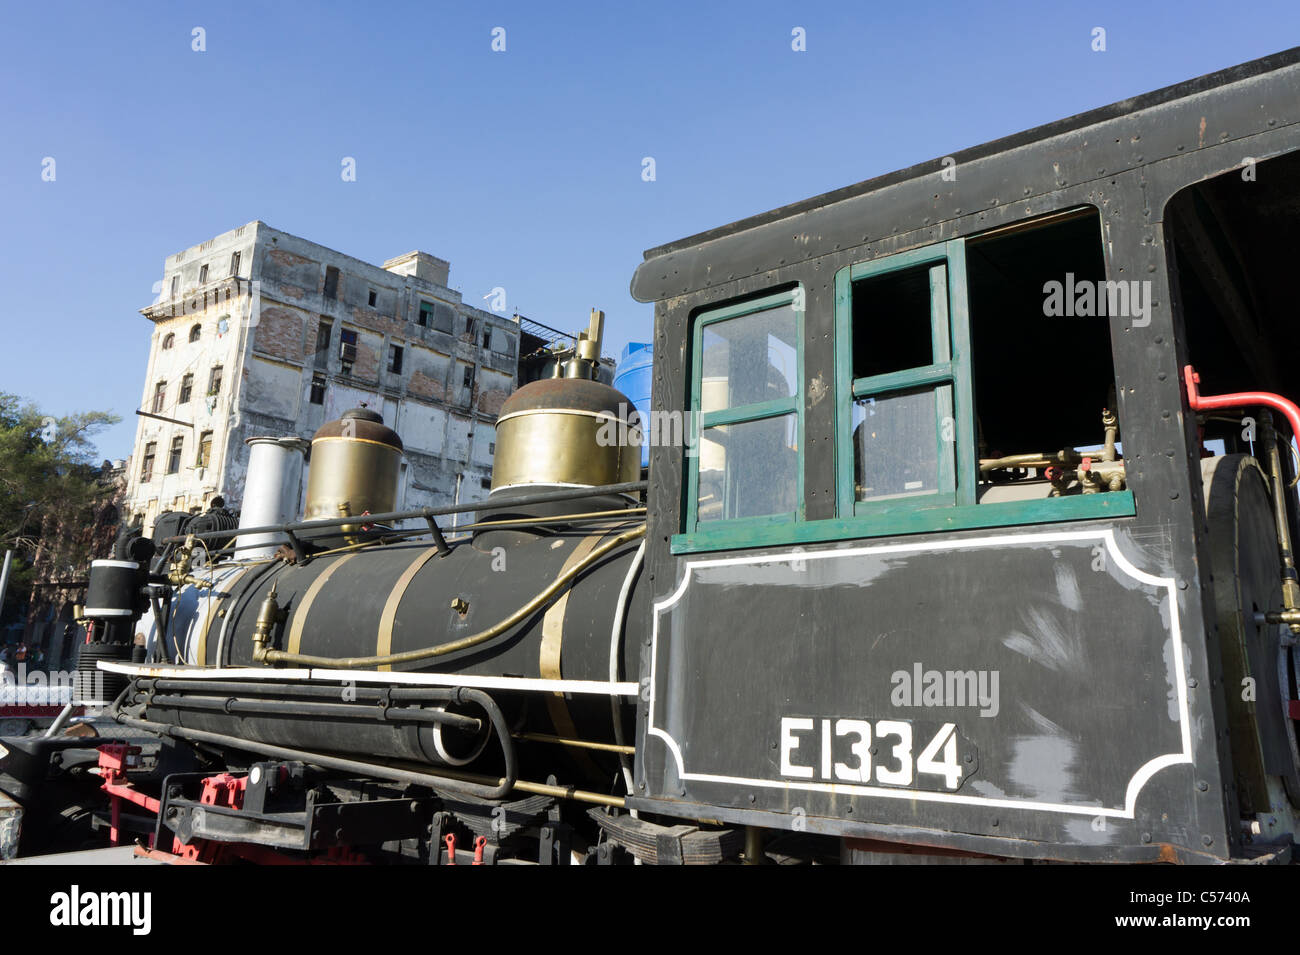 1920 2-8-0 locomotiva a vapore (dalla locomotiva Baldwin opere) dopo i lavori di restauro, Havana, Cuba Foto Stock